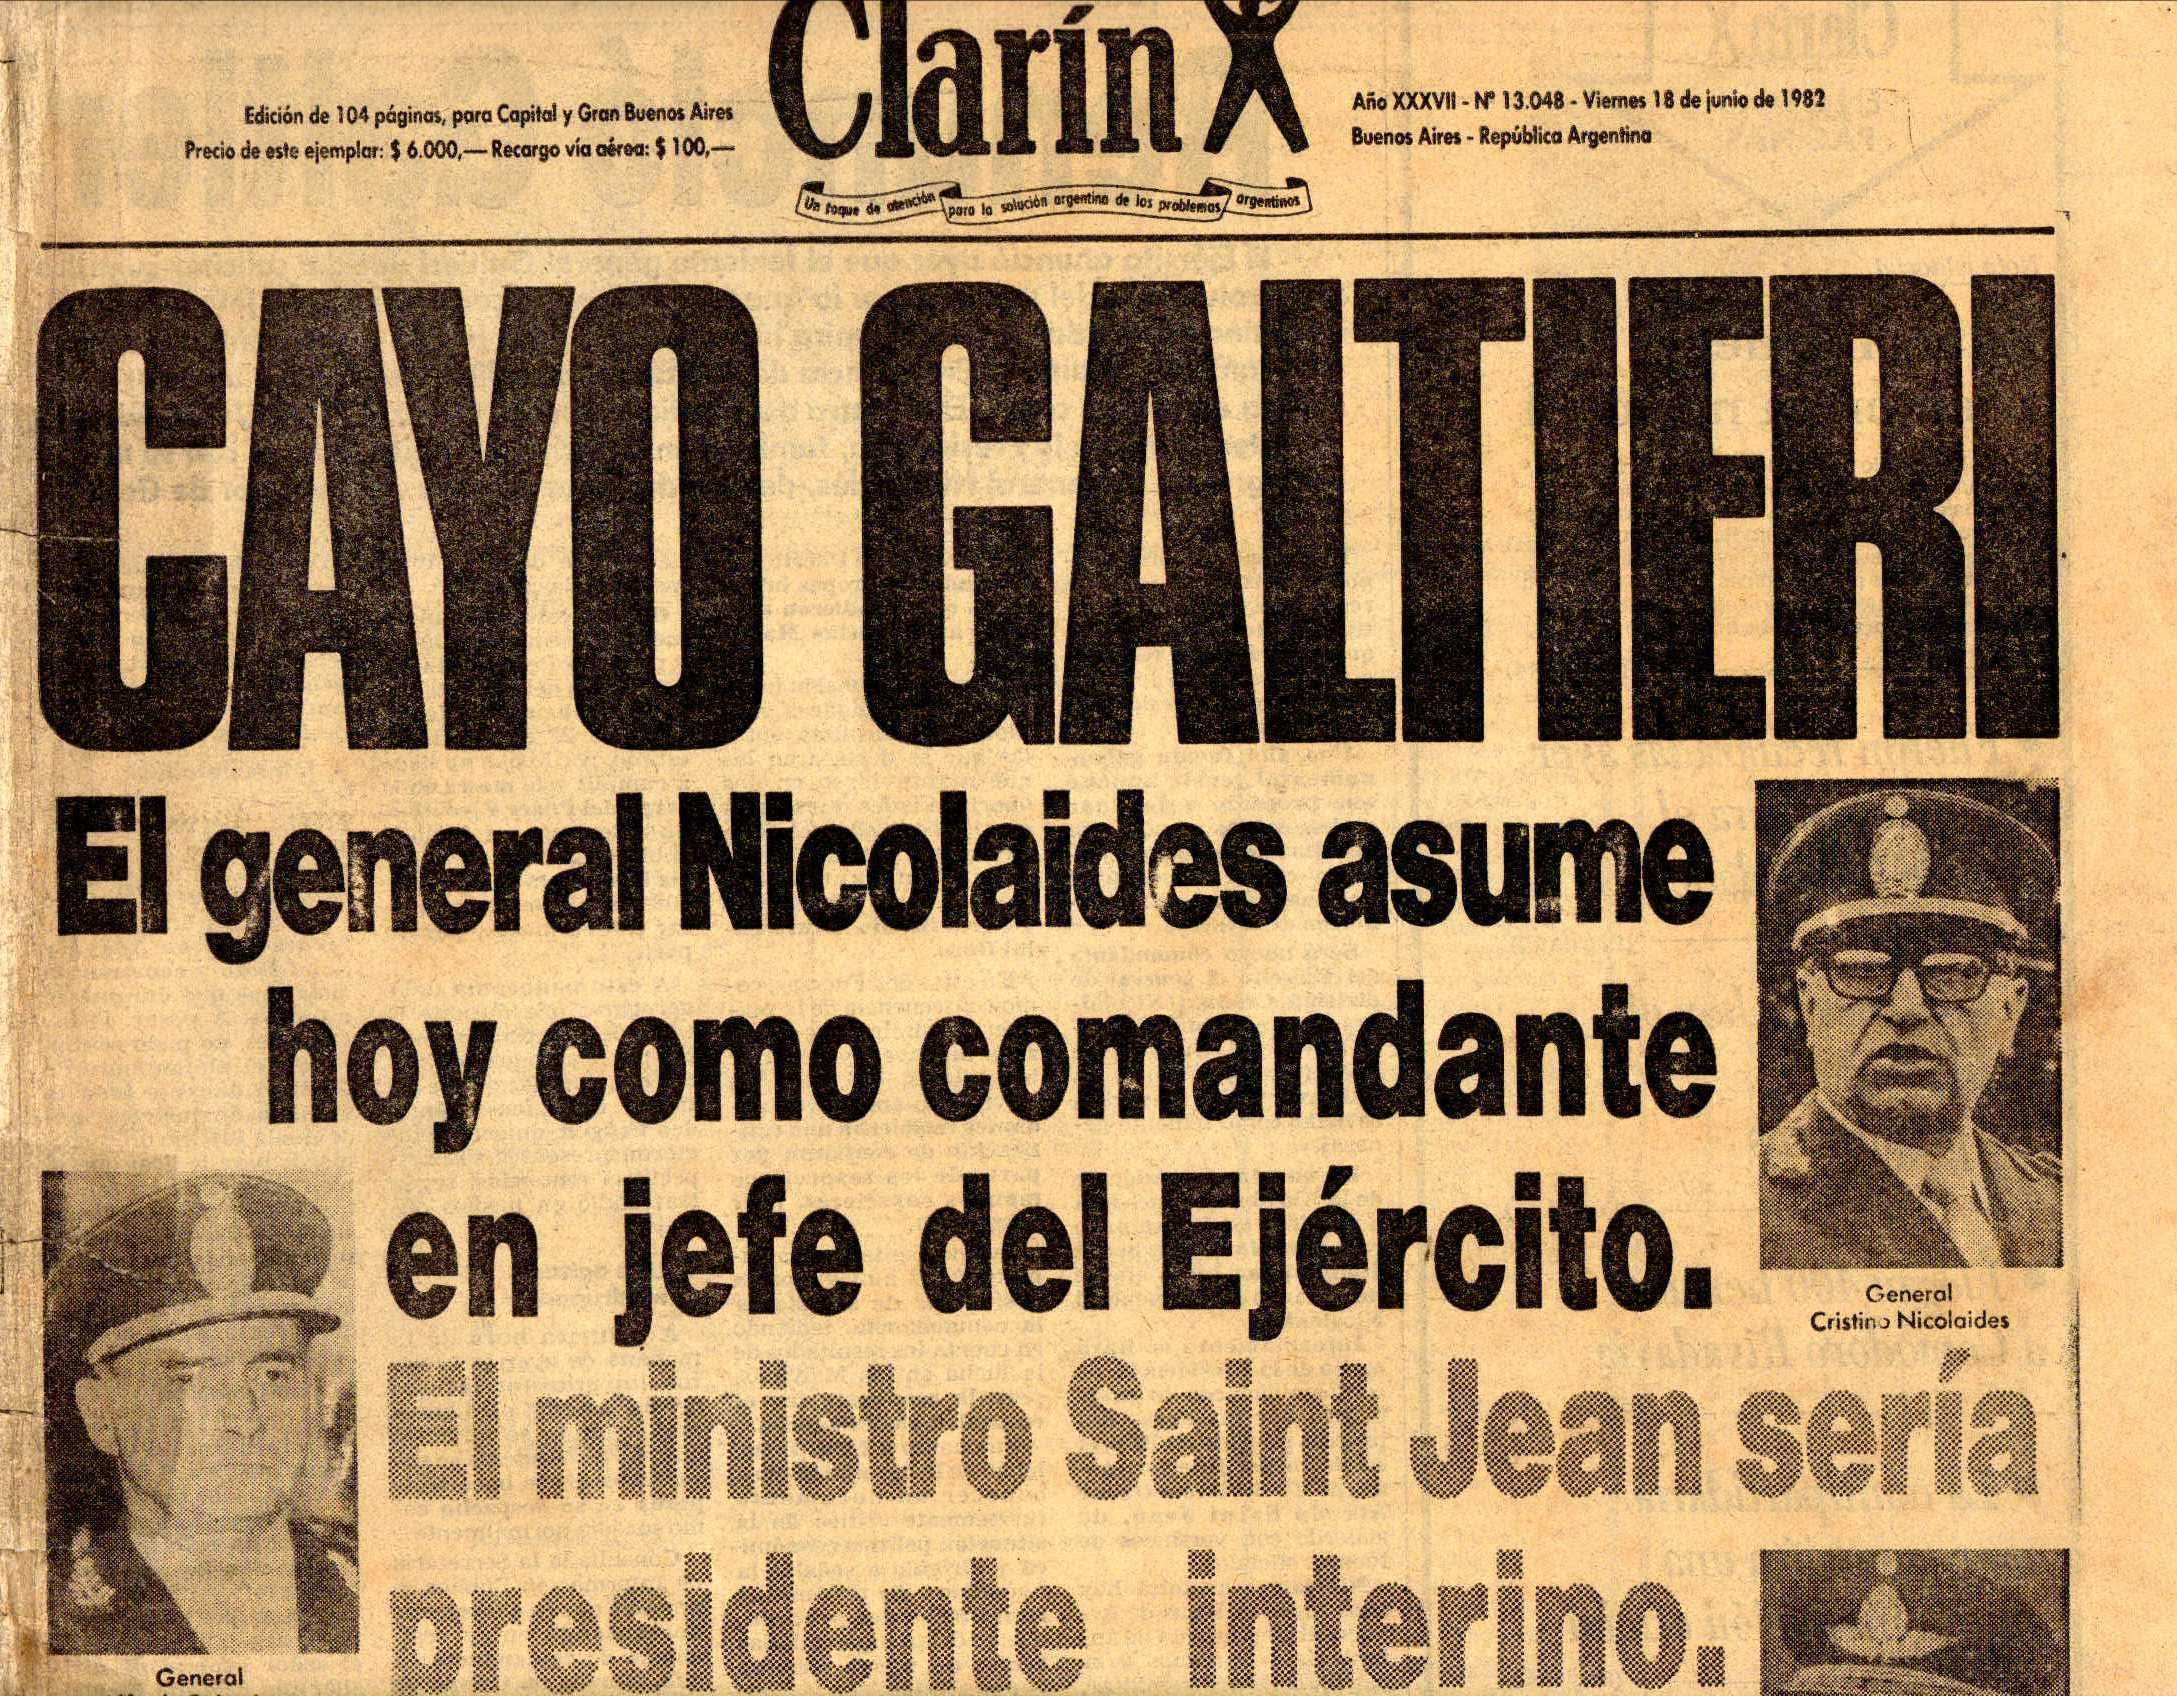 Título de tapa de “Clarín” anunciando la deposición de Galtieri.